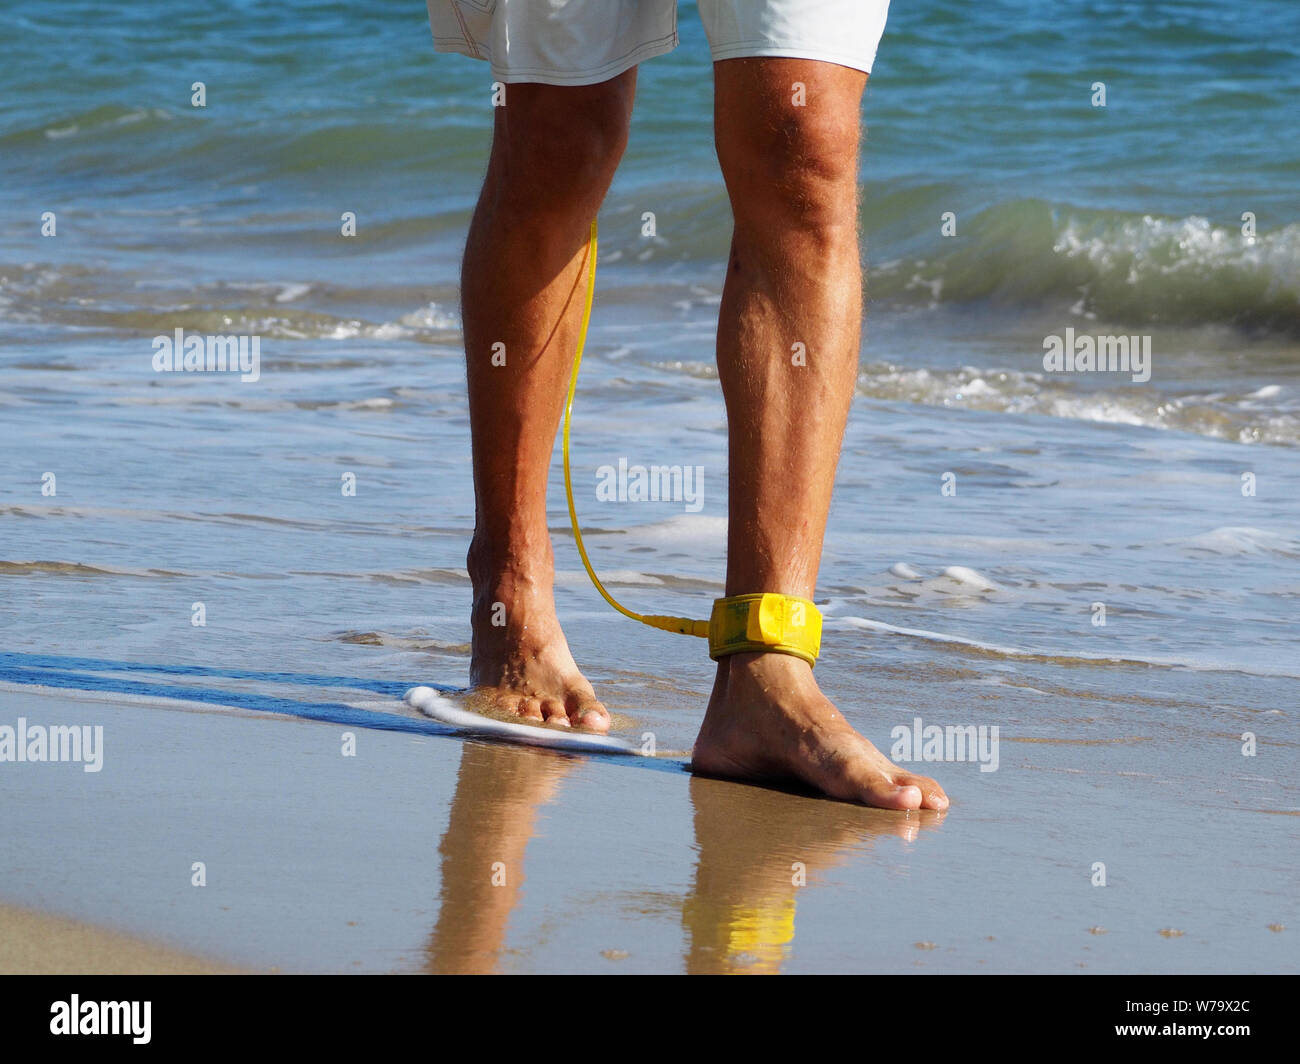 Close-up ein Surfer zu Fuß am Strand entlang auf seinem Fuß eine gelbe Leine. Atlantik. Sandstrand. In shorts gebräunte Beine angezogen. Stockfoto